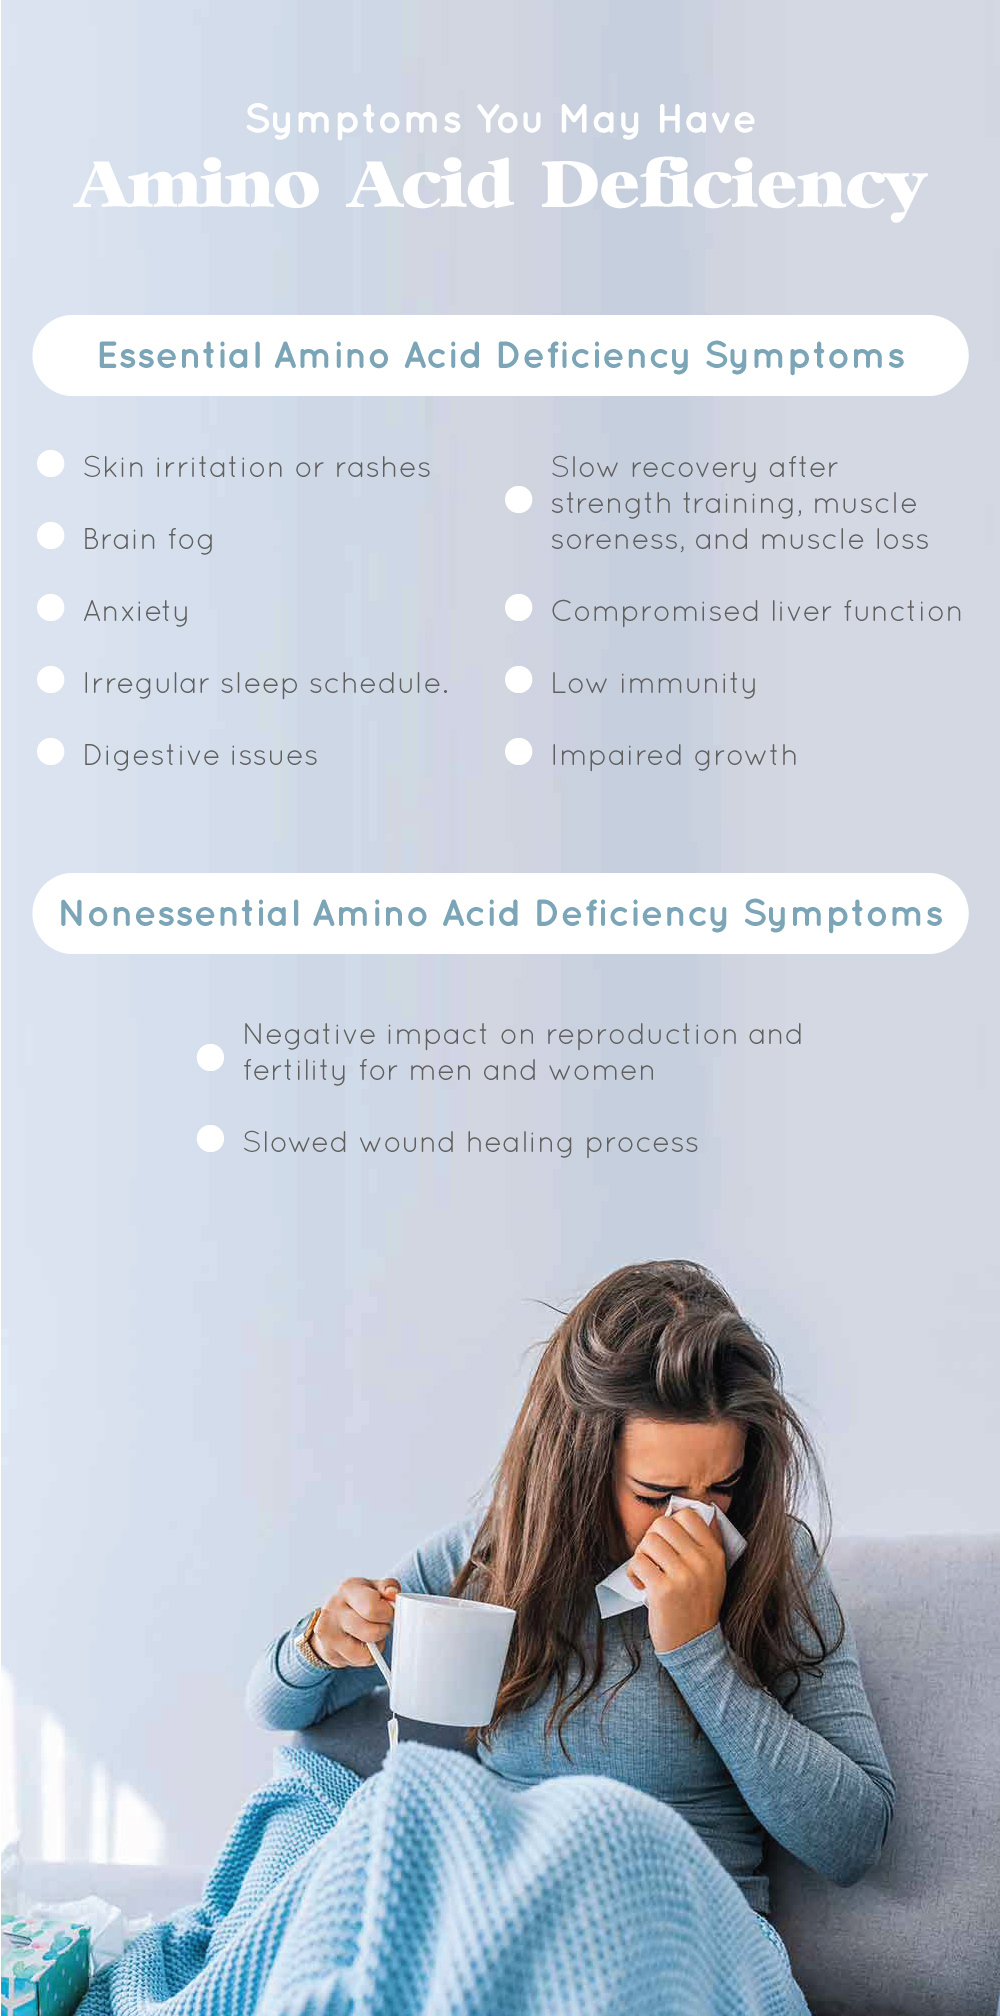 Symptoms You May Have Amino Acid Deficiency